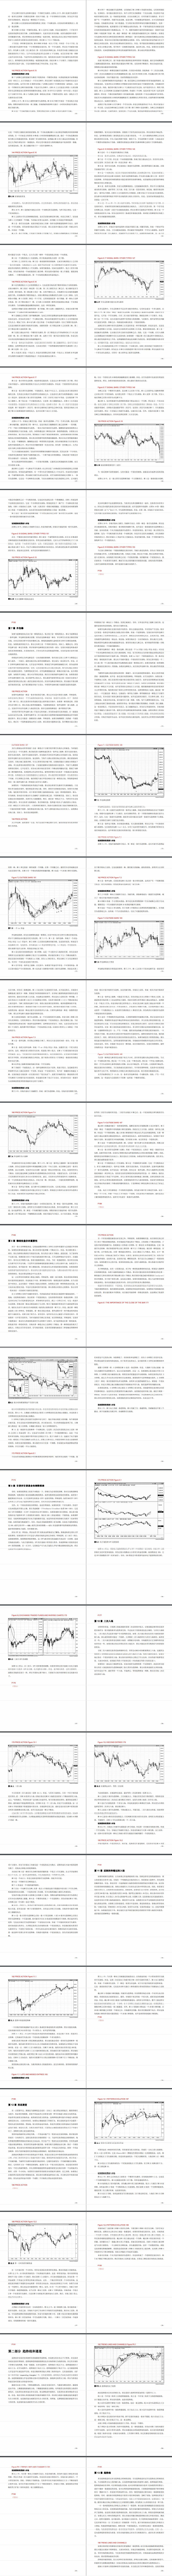 AL Brooks ：《价格行为交易之趋势篇》中文版图片连载（八）